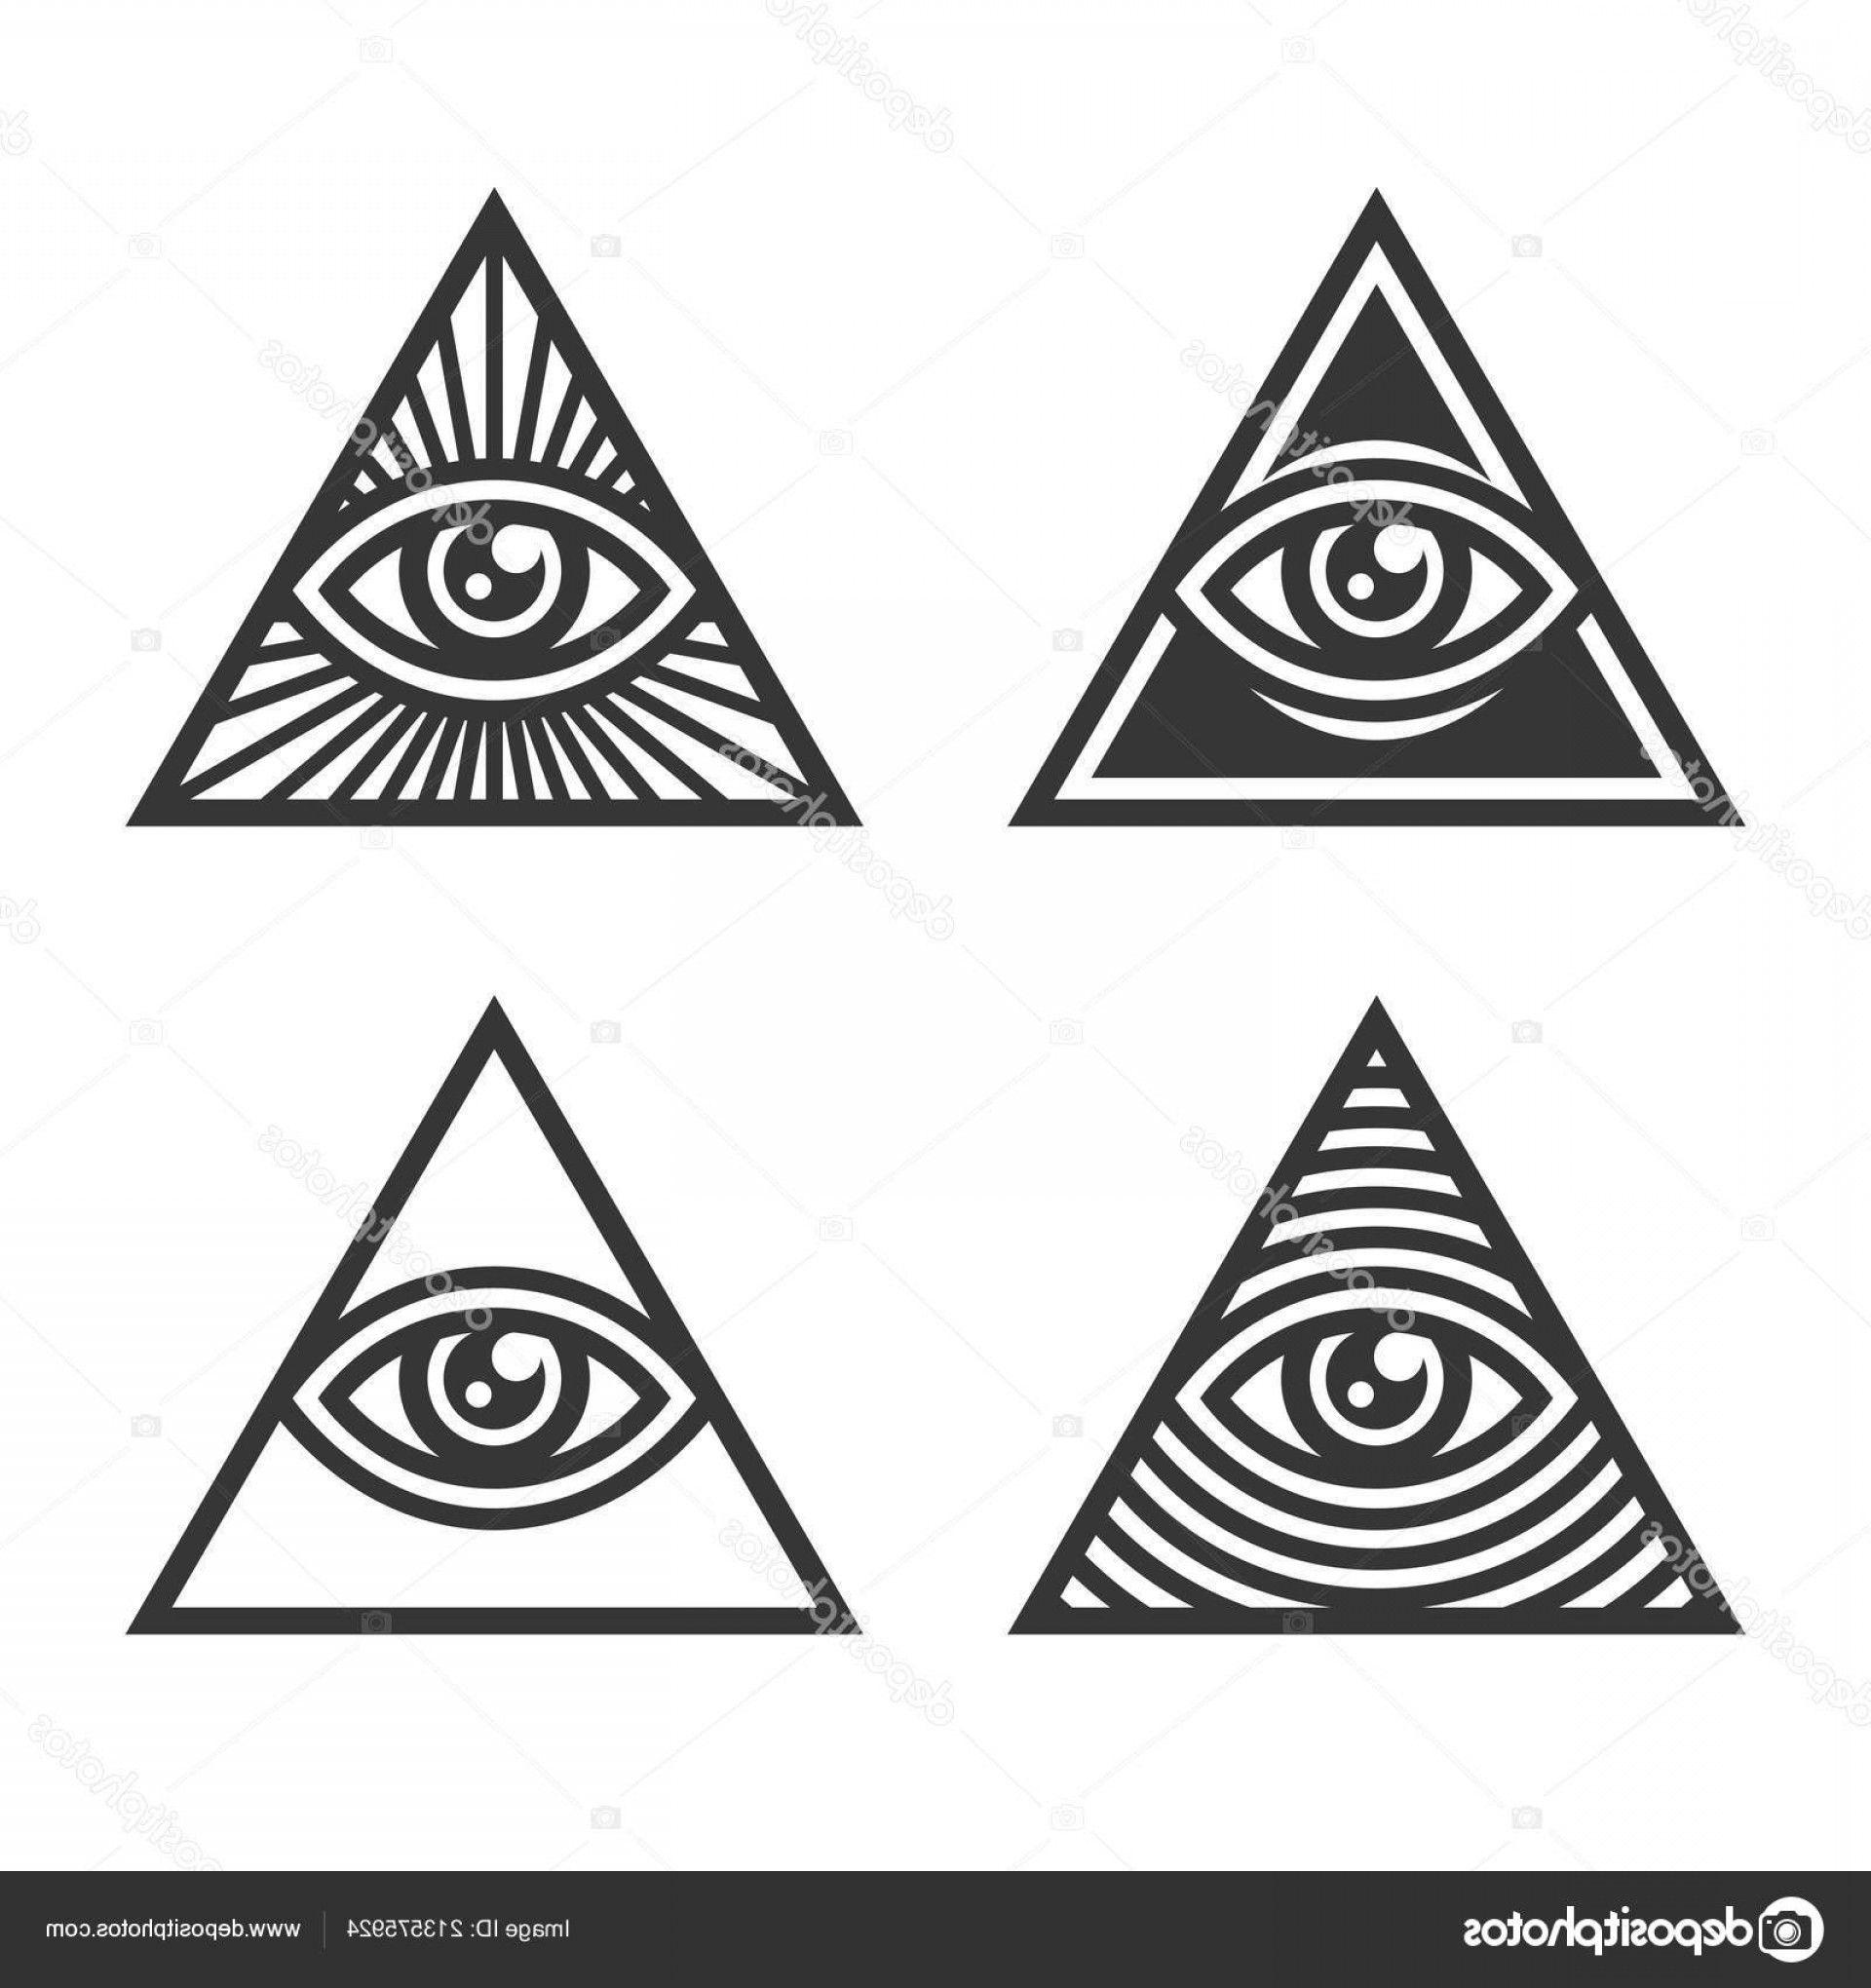 Black and White Triangle with Eye Logo - Stock Illustration Masonic Illuminati Symbols Eye Triangle | ORANGIAUSA